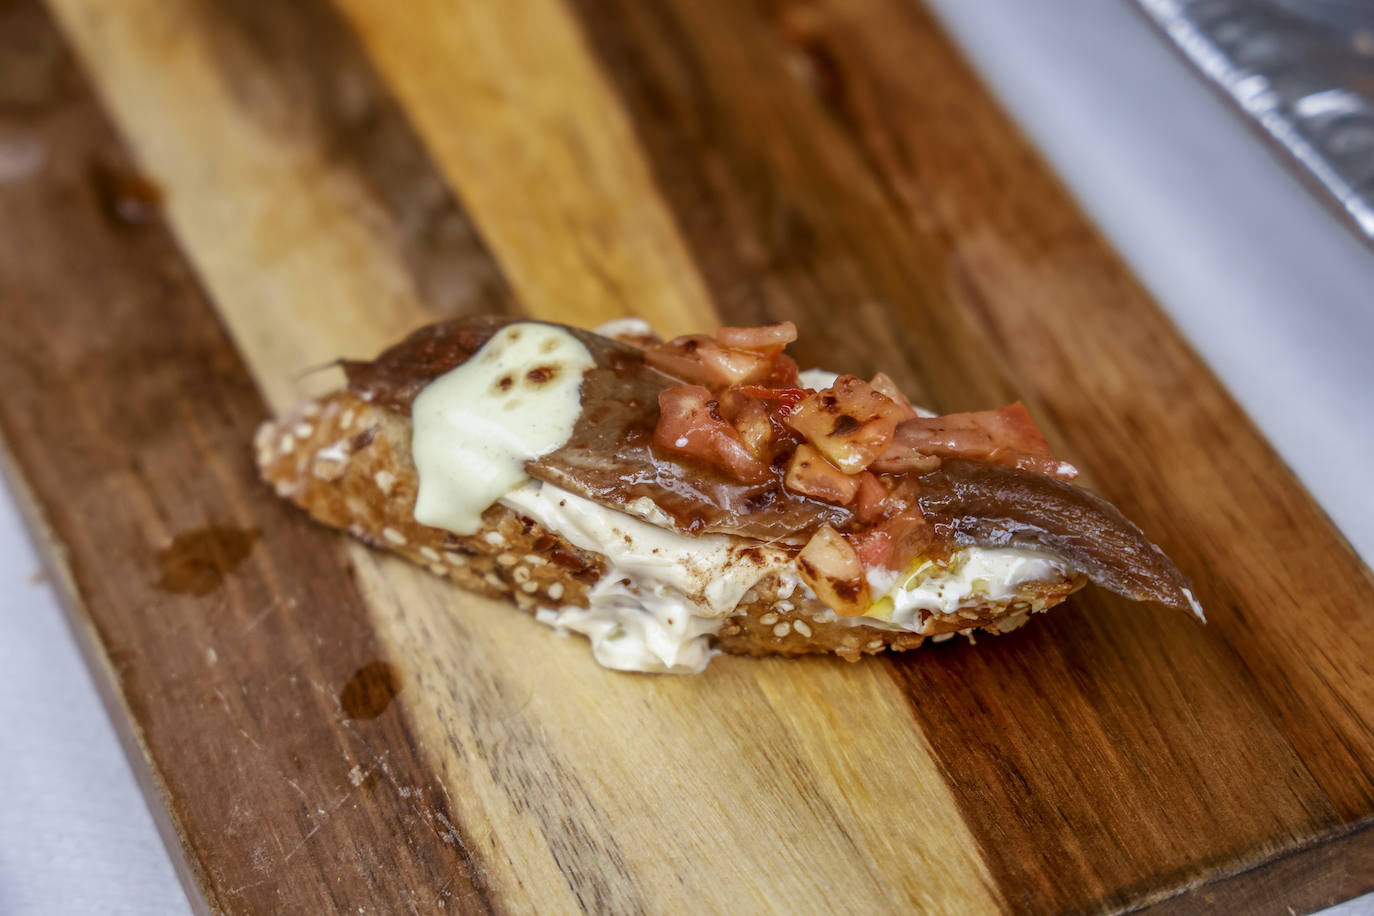 Tosta de anchoa marinada en soja y manzanilla con tártar de alcaparras y tomate concassé y cacao espolvoreado. El pintxo del bar Dólar.